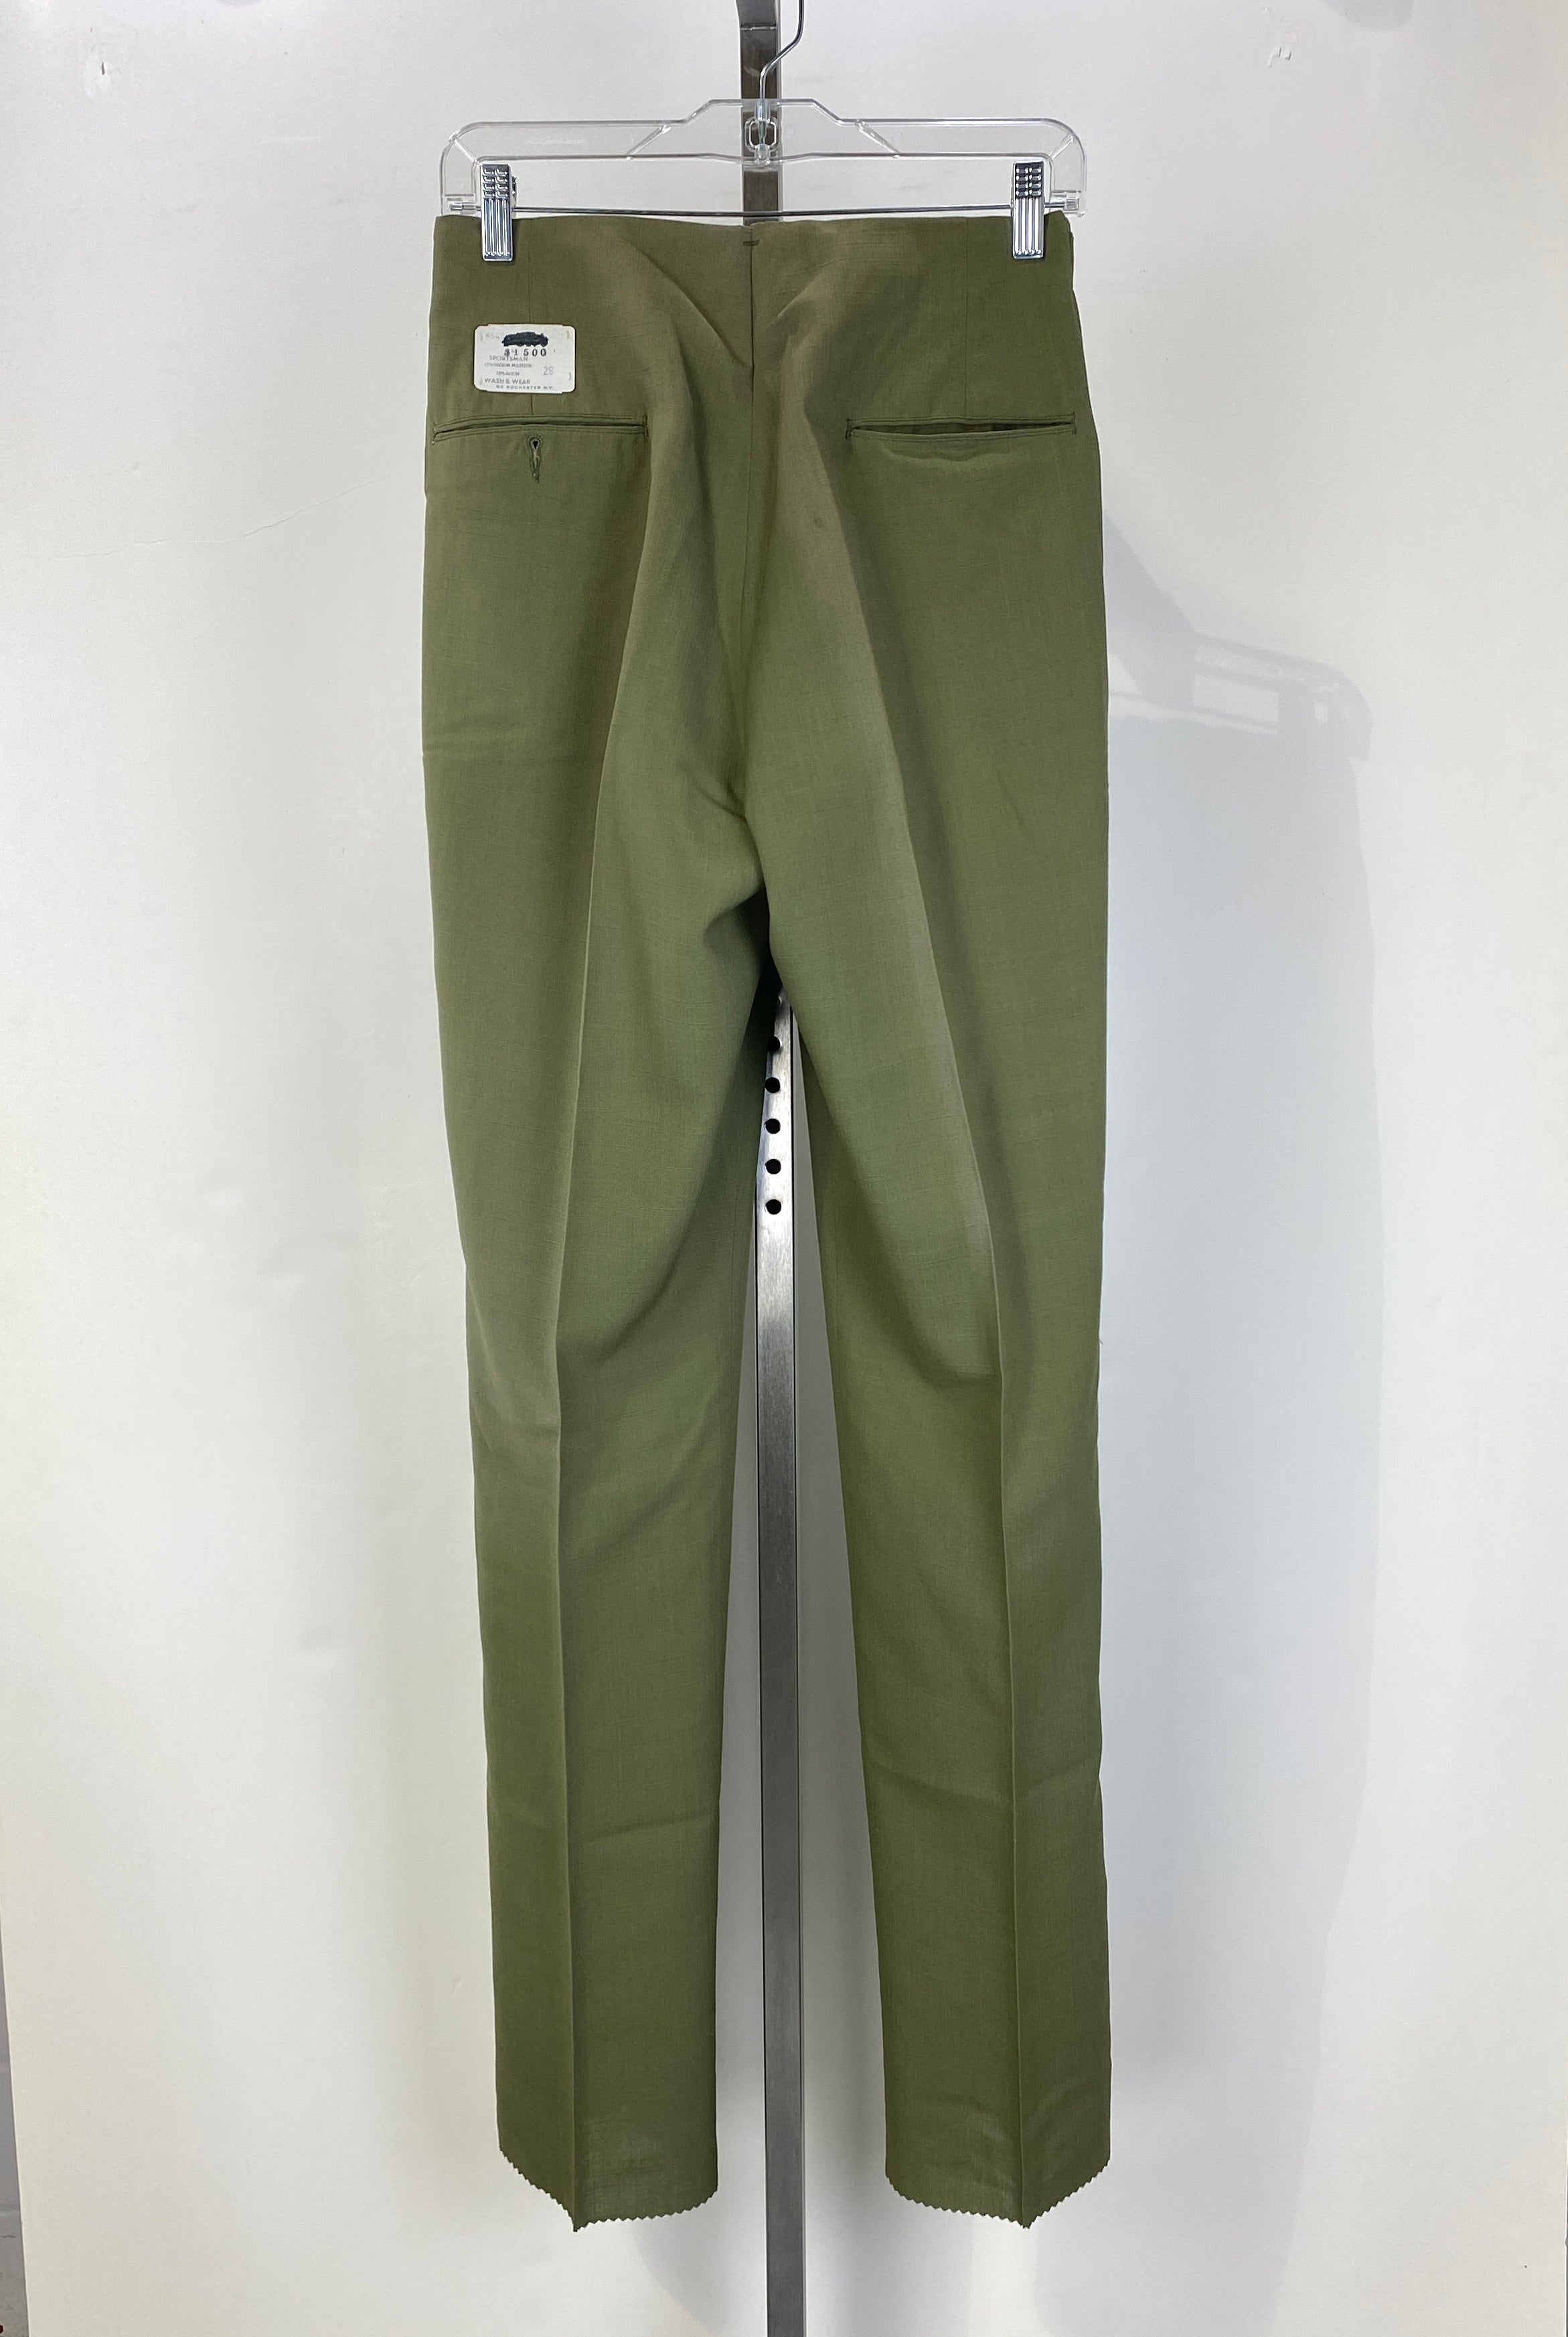 Vintage 1960s Deadstock Green Straight-Leg Slacks, Men's Polyester  Trousers, NOS